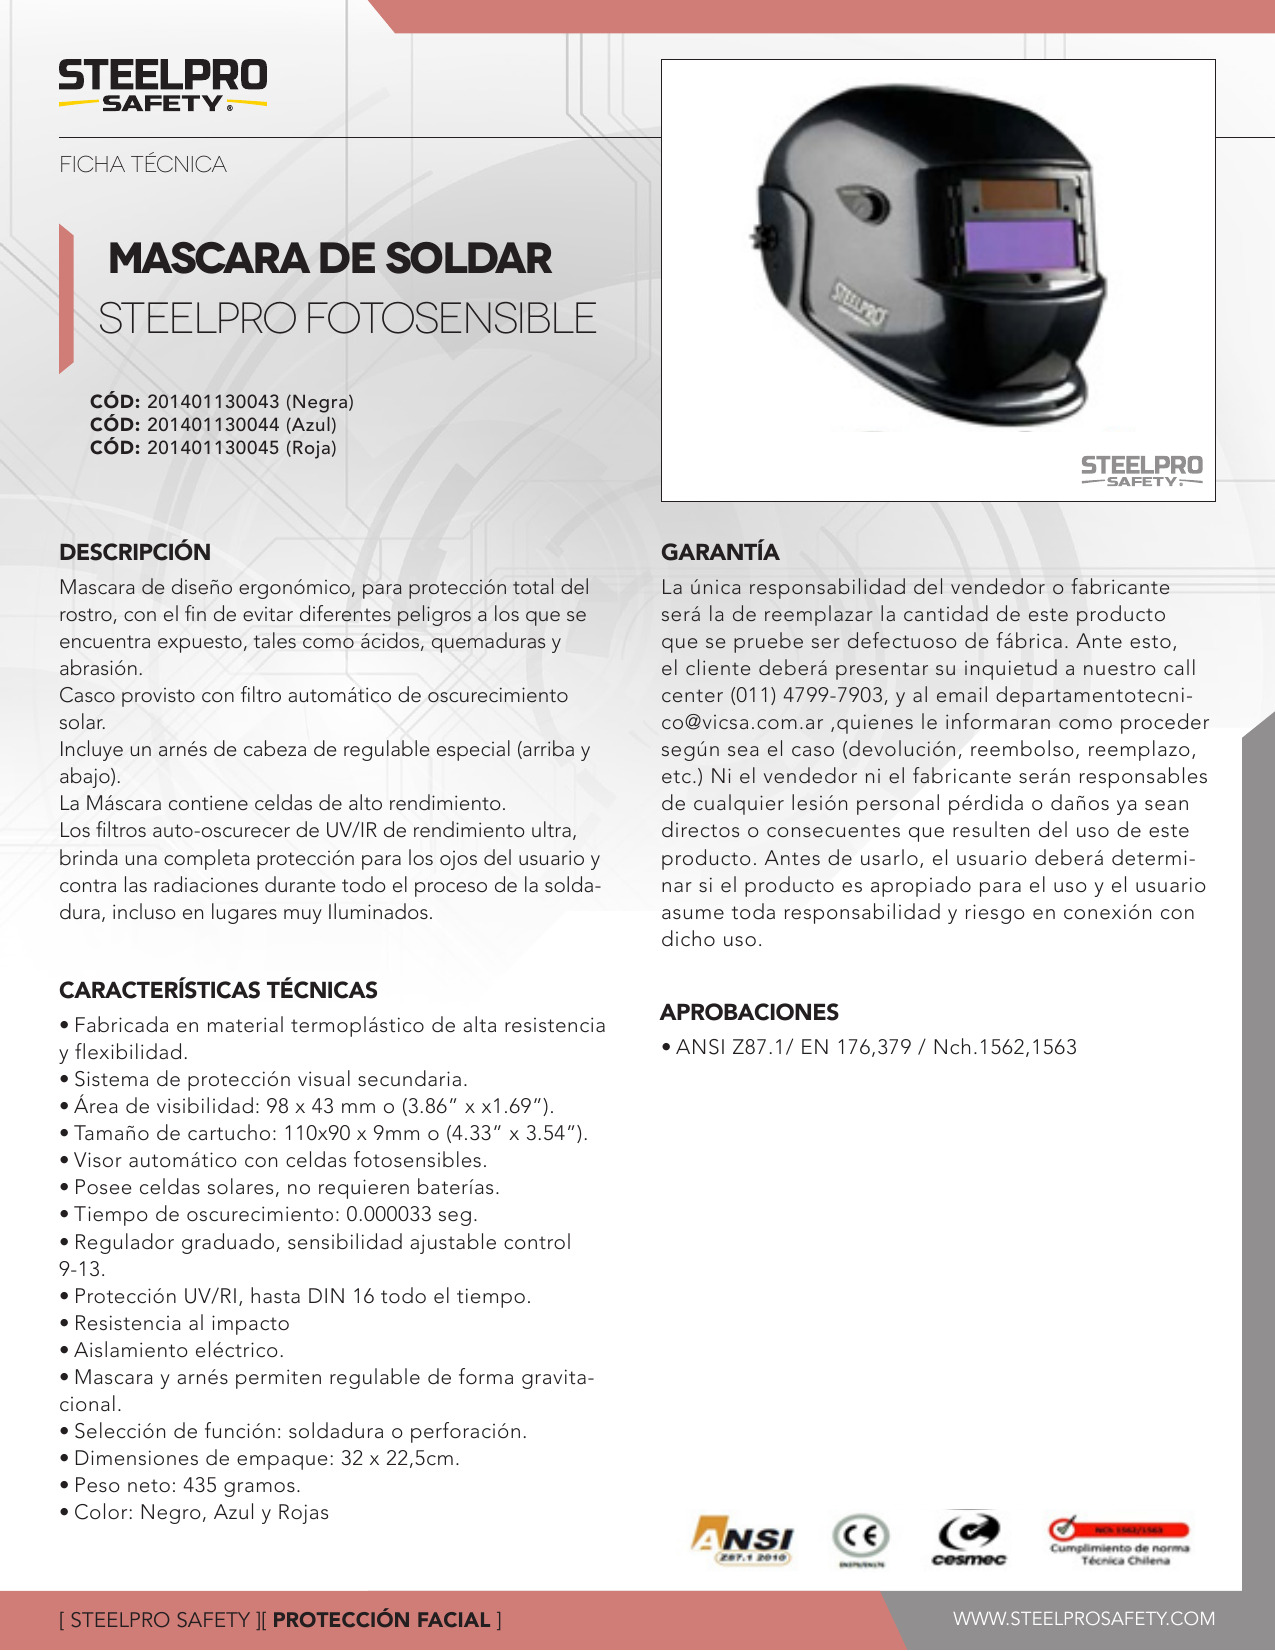 Mascara De Soldar Optech Adaptable Al Casco